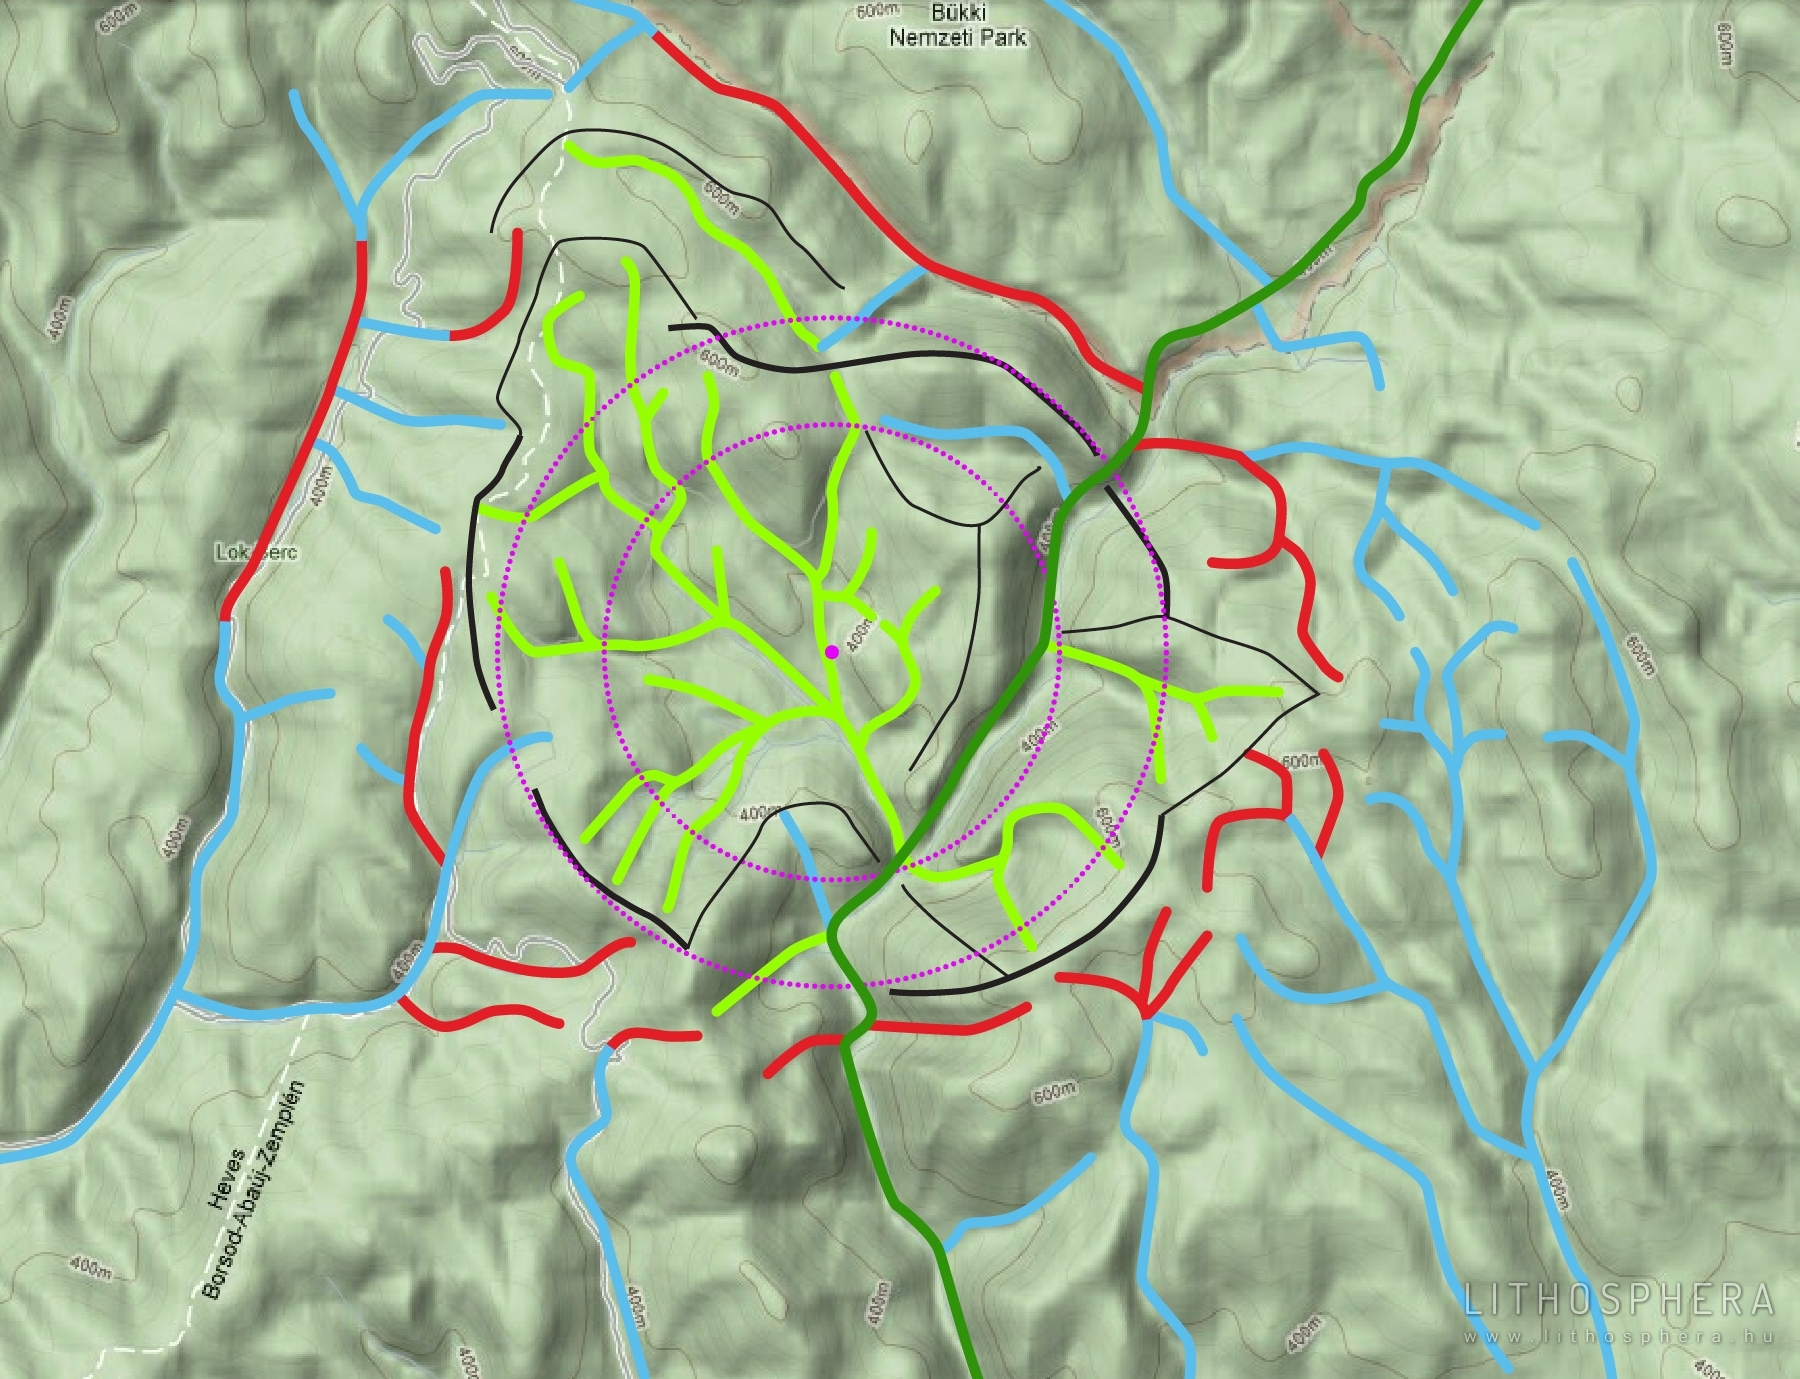 3.a ábra: A Hosszú-völgy környékének völgyirányai, vízrajzi hálózata a GoogleMaps domborzati modelljére vetítve Zöld völgyek: a krátermedence belsejébe futnak (konvergens irányúak). A krátersánc belső oldalain lefolyó vizek (völgyek) ágas szerkezete, centripetális iránya, s a sánc alja felé történő egyesülésük medencejelleget mutat; kék völgyek: a krátersánc külső oldaláról széttartanak (radiálisak) a völgyirányok, azaz centrifugális mintázat jellemzi. Ezeket a folyóvizeket a külső lejtők irányították; piros völgyek: azok a völgyszakaszok lettek kiemelve, amelyek ívelt futása a hajdani krátersáncot jelzik. (Figyelemre méltó a Hór-völgytől keletre a Belvács-völgy – Tamás-széki-völgy vonaláig nyomozható szeszélyesen hajladozó, ívelt vonalú különös völgyhálózat. Talán egy koncentrikus kráter külső pereme?)